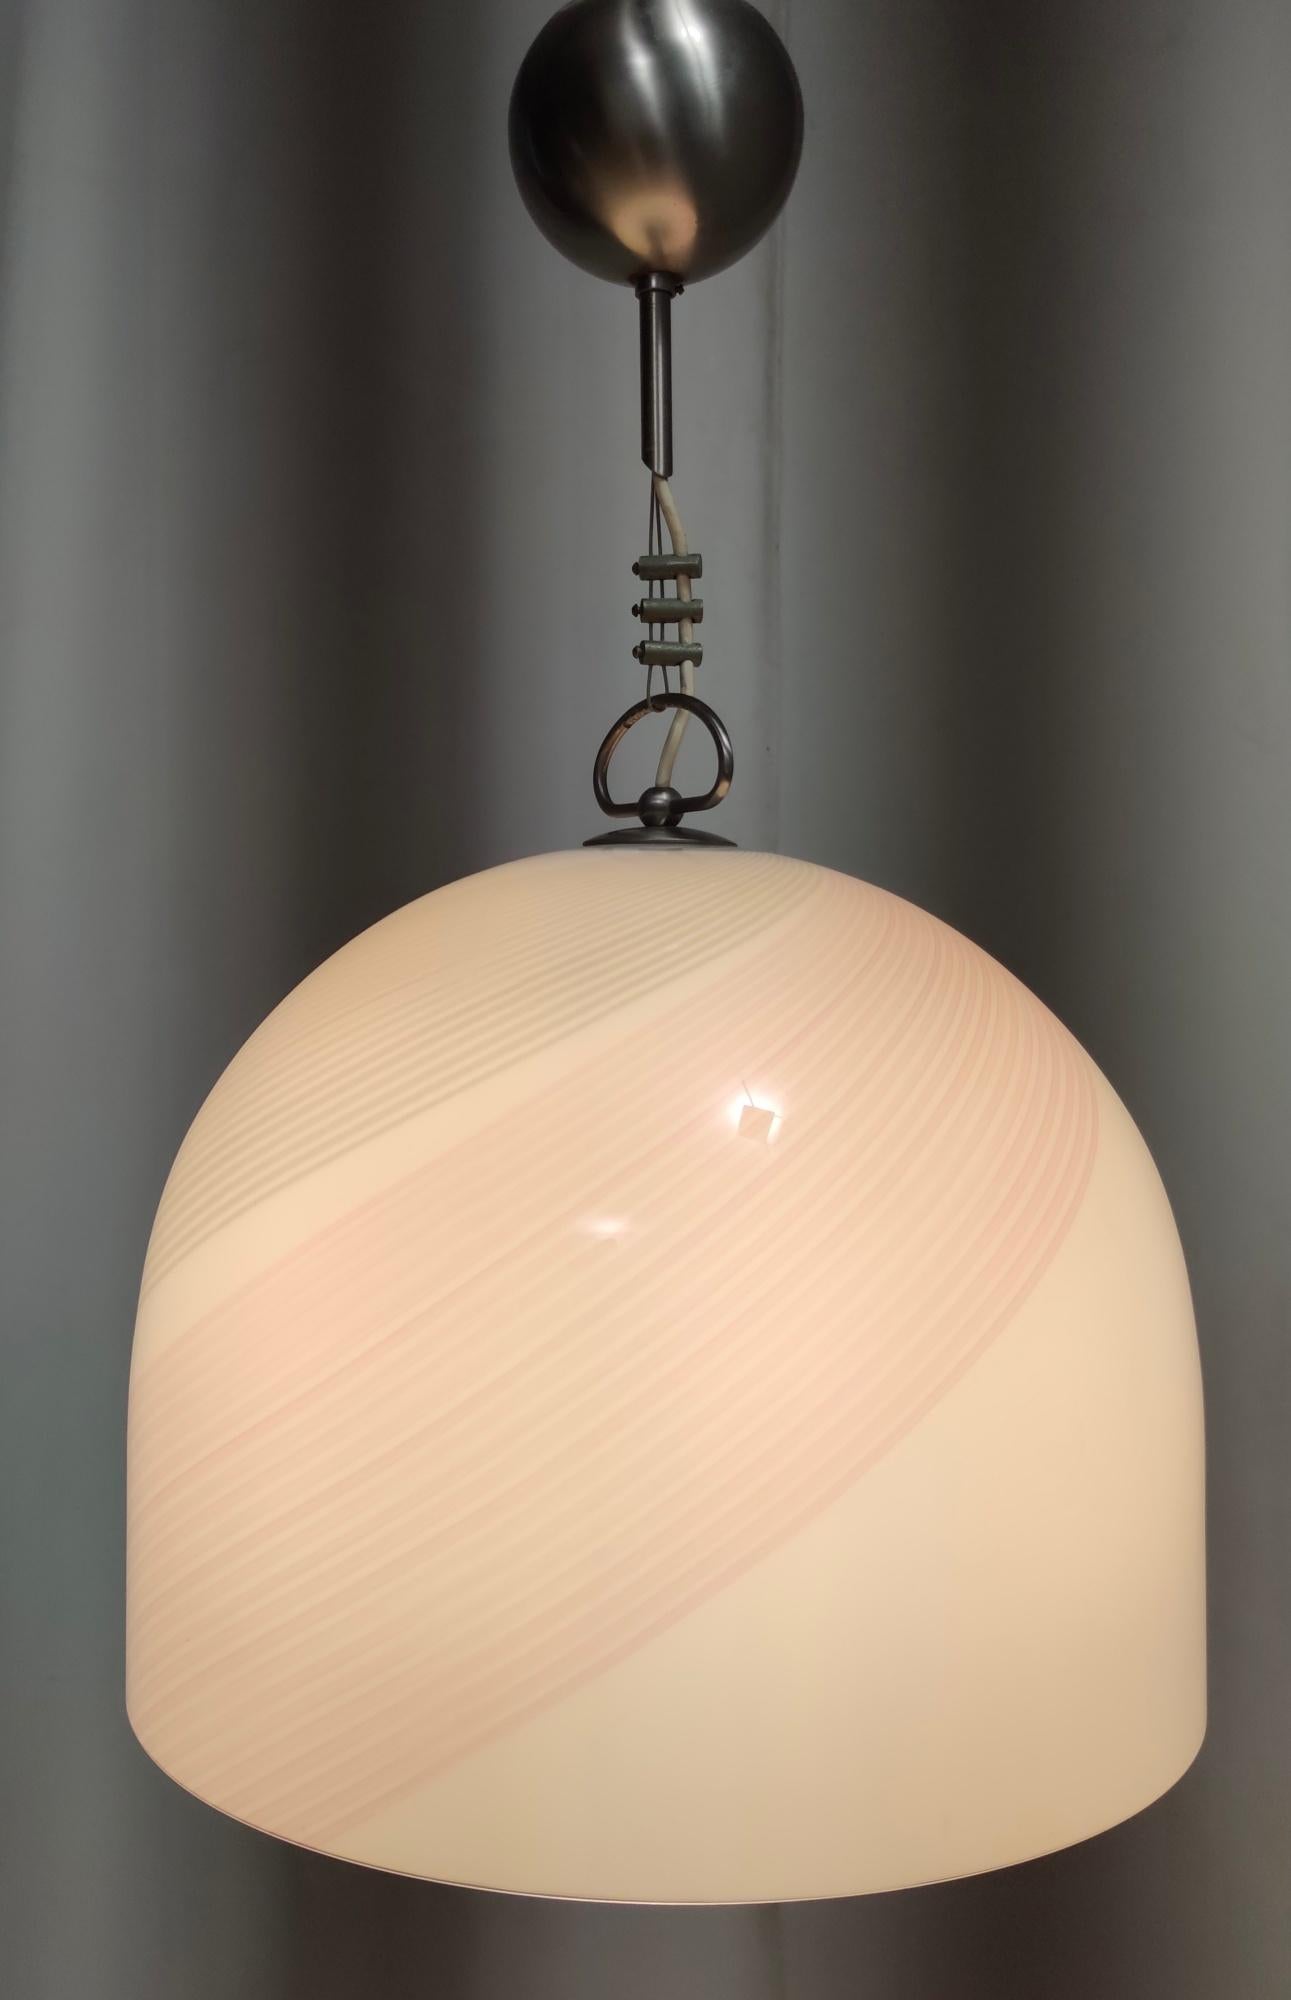 Hergestellt in Italien, 1970er - 1980er Jahre. 
Sie hat einen glockenförmigen Lampenschirm aus weißem Murano-Glas mit rosa und grauen Linien. 
Dieser Anhänger ist ein Vintage-Stück, daher kann er leichte Gebrauchsspuren aufweisen, aber er ist in